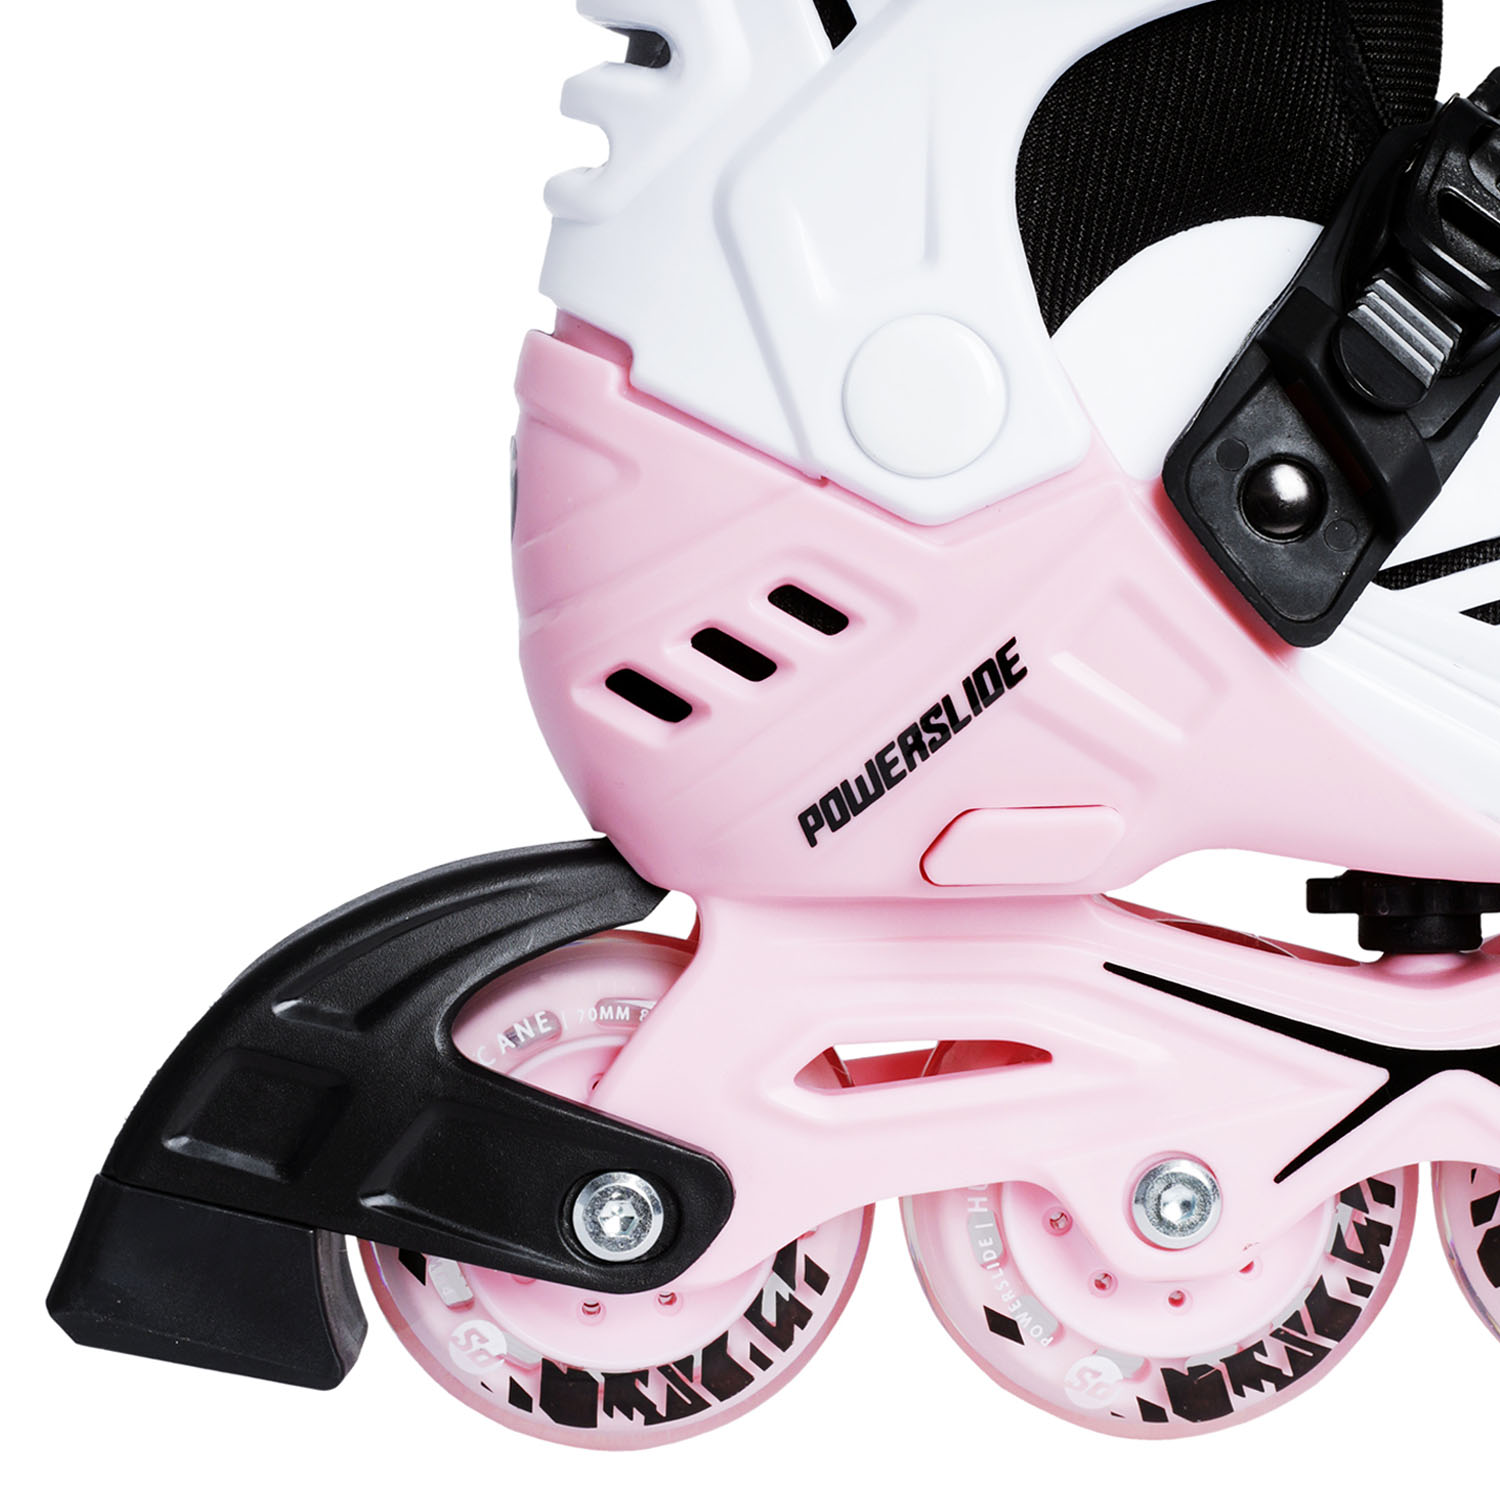 Роликовые коньки Powerslide Khaan Junior LTD White/Pink